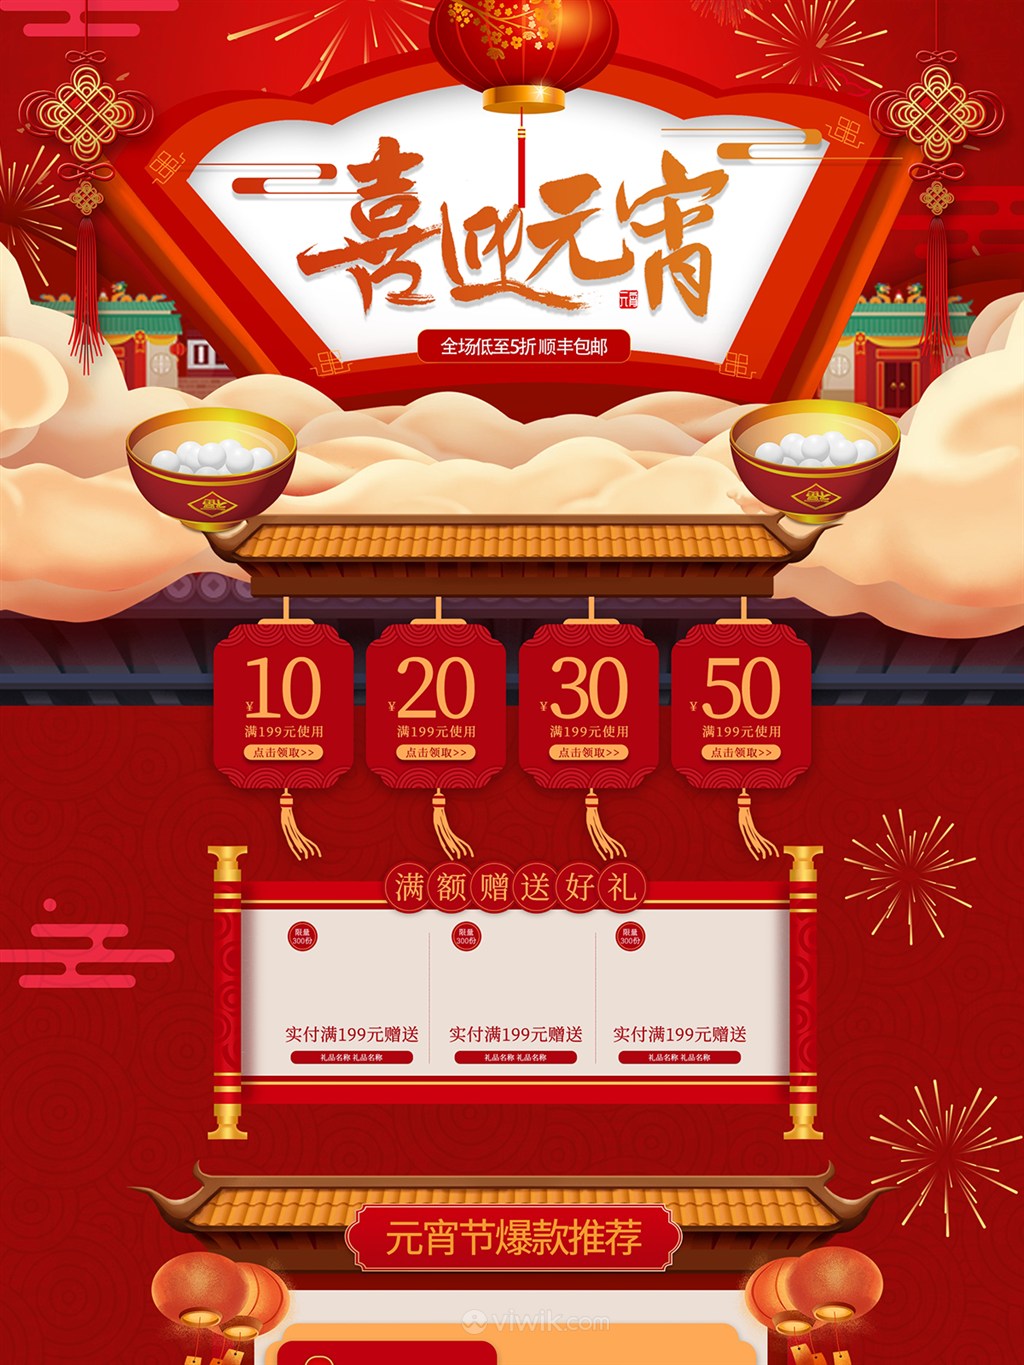 中国风红色喜迎元宵淘宝电商首页模板